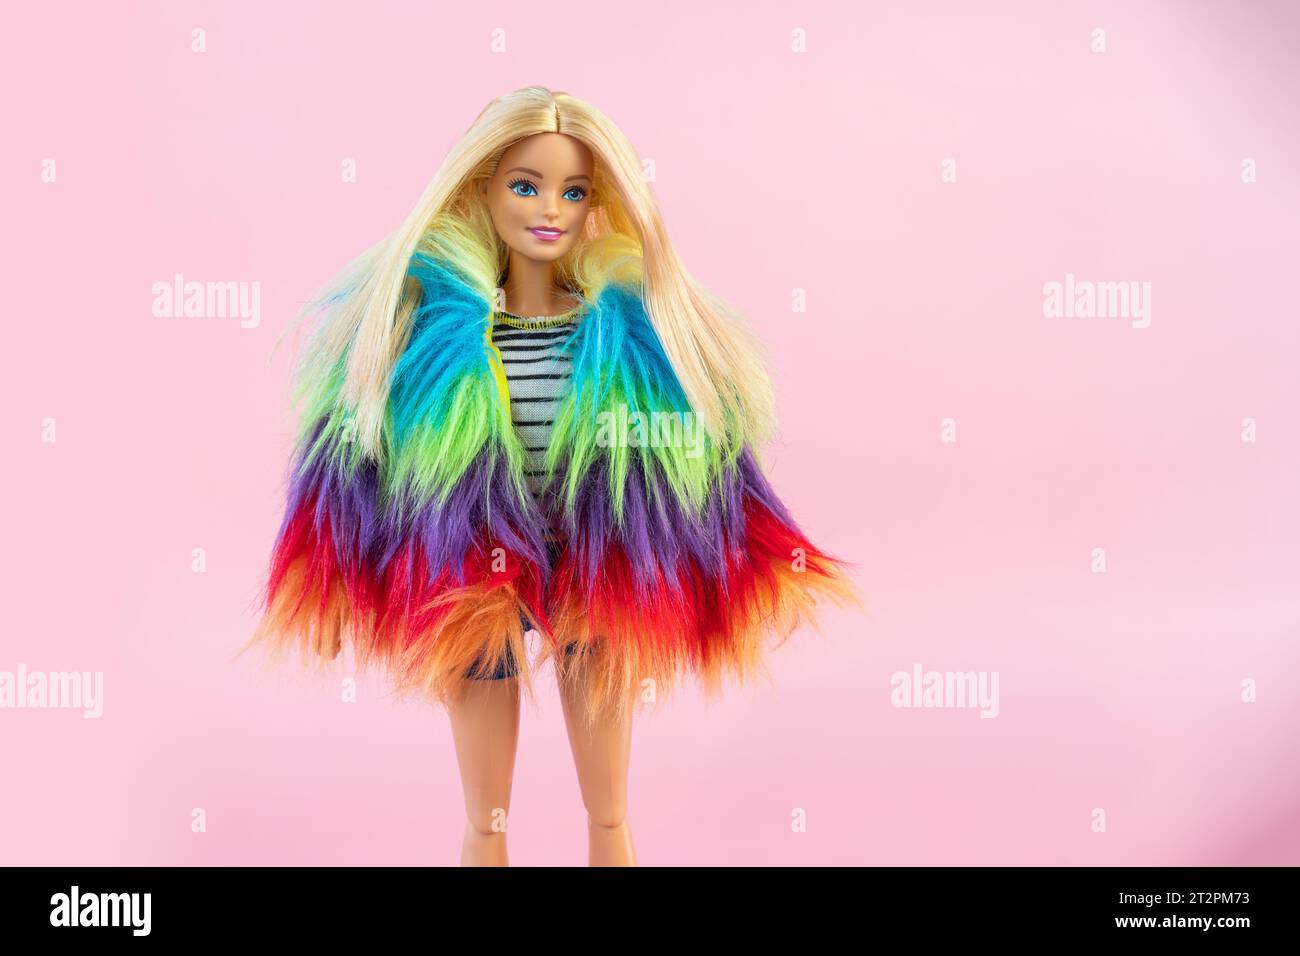 9 octobre 2023. Barnaul, Russie : poupée Barbie avec les cheveux blonds lâches debout sur un fond rose. Banque D'Images